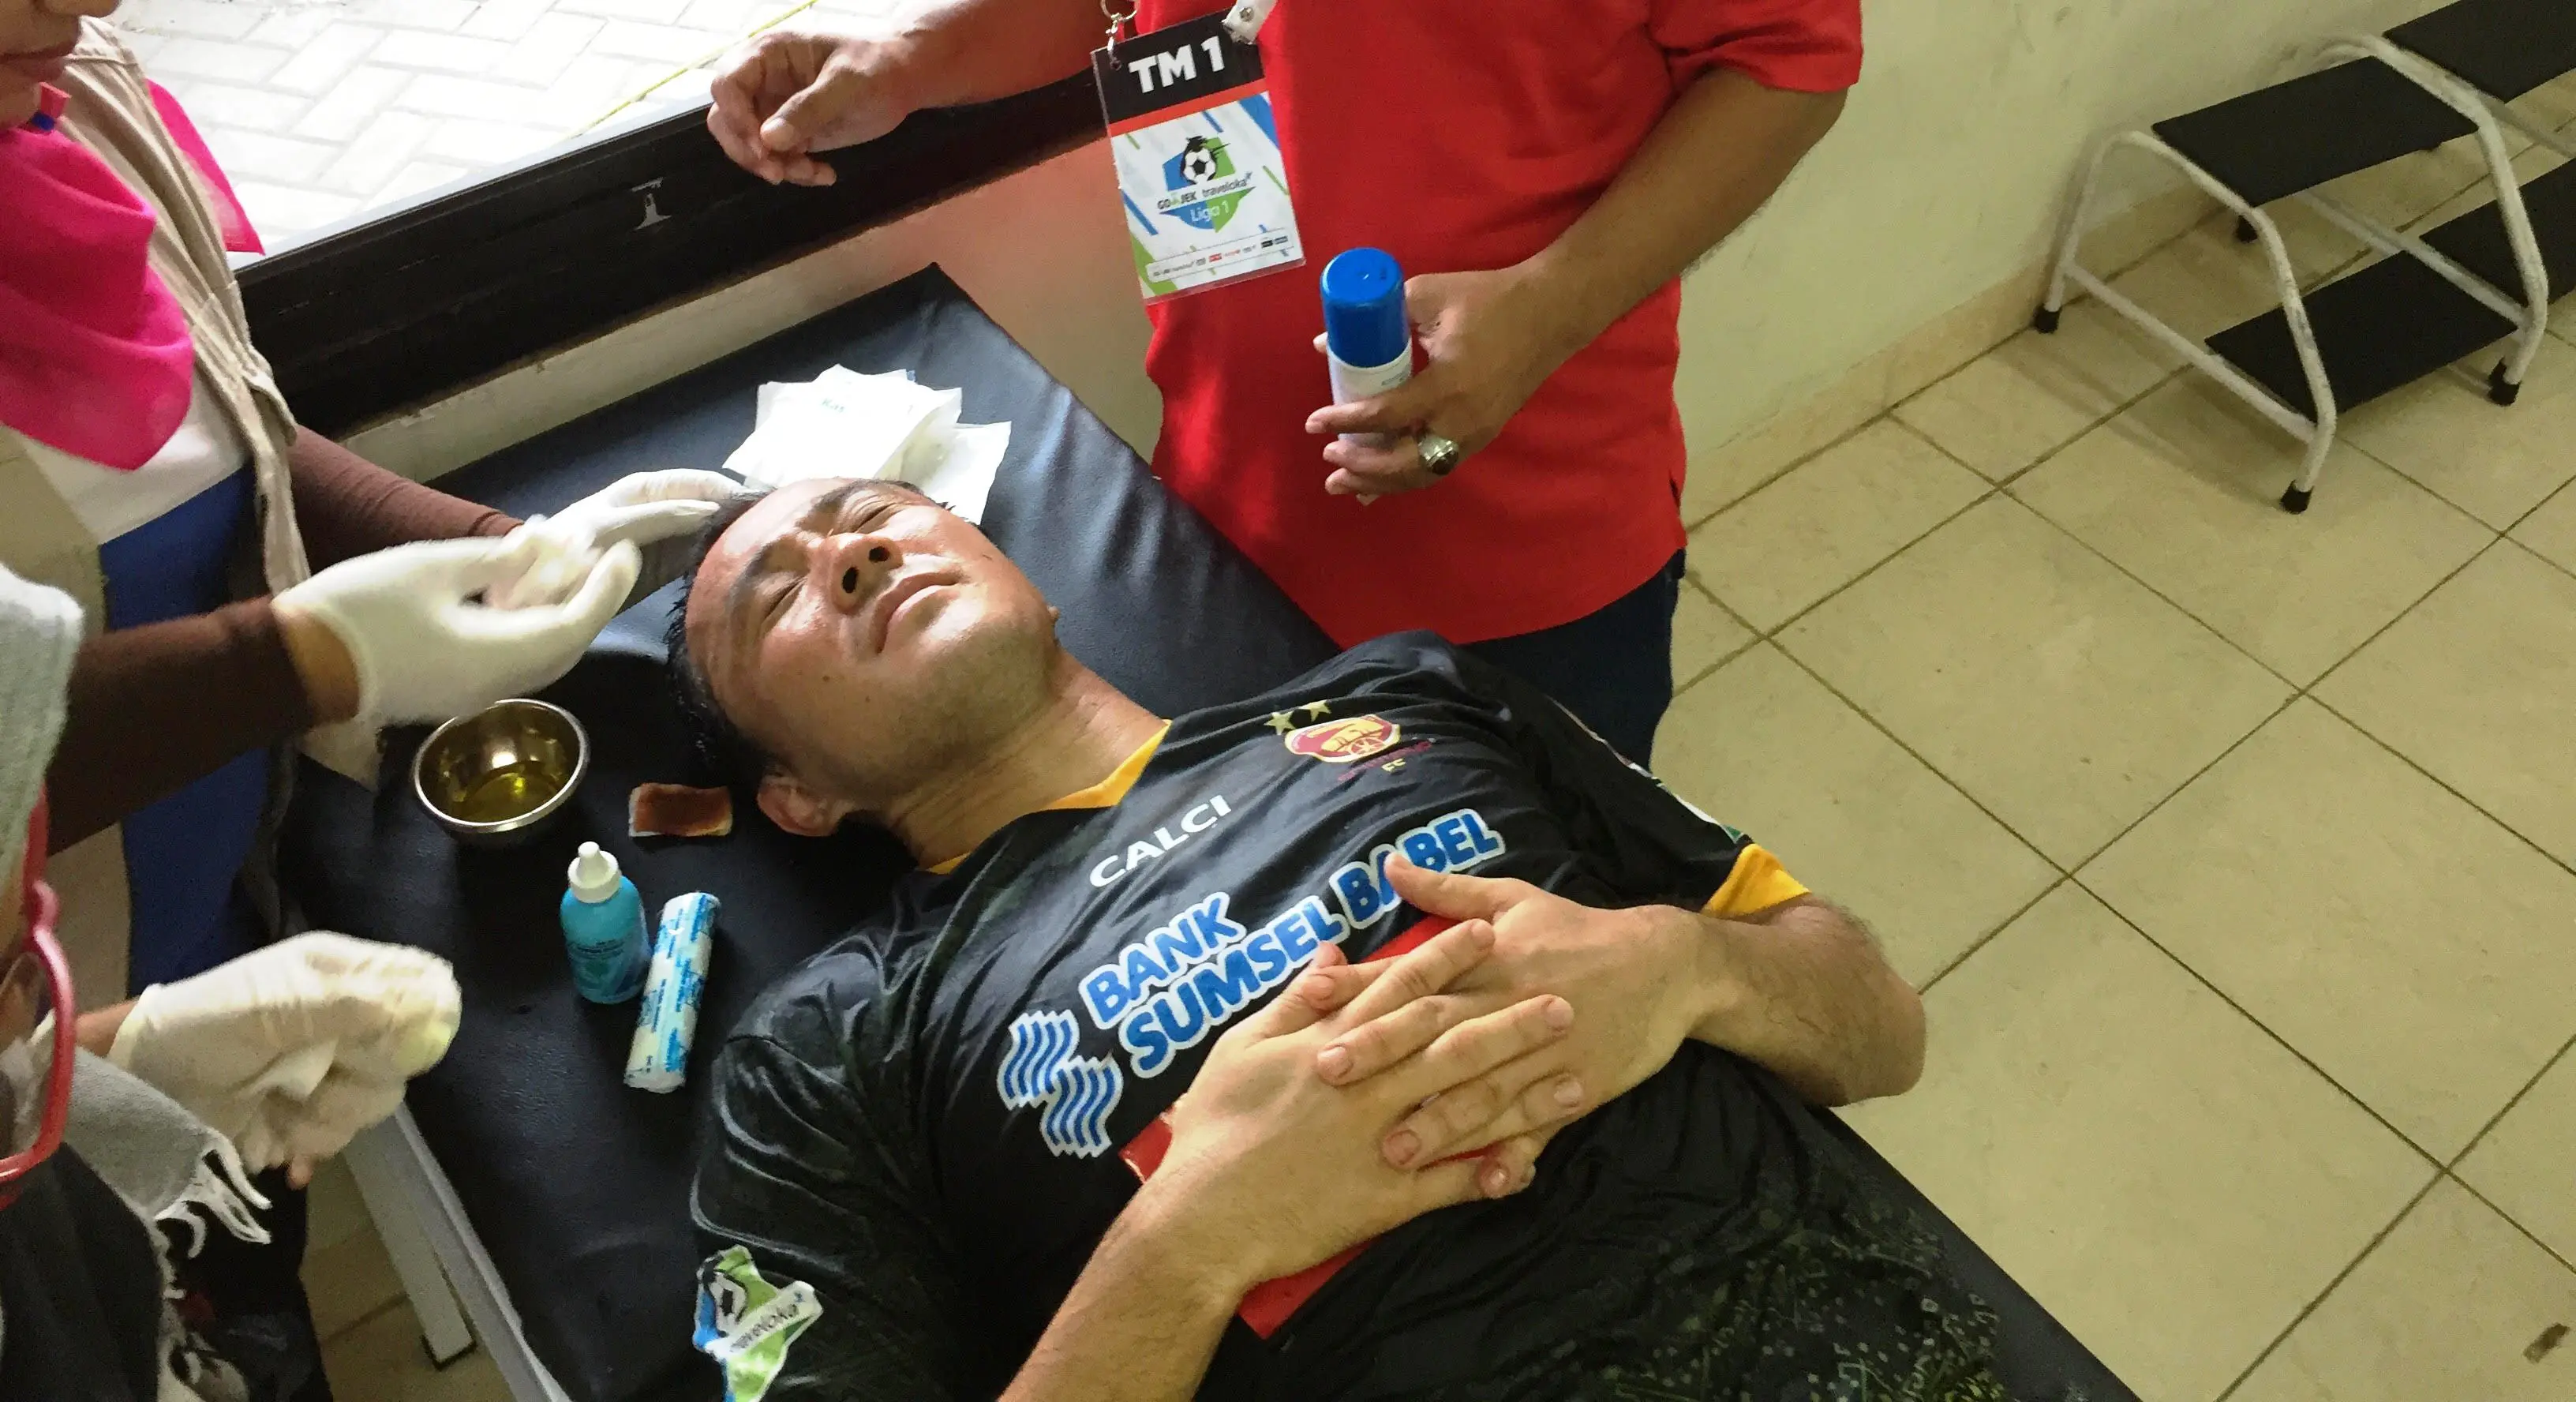 Gelandang Sriwijaya FC, Yu Hyun-koo, mendapat perawatan setelah mengalami cedera di kepala, Minggu (20/8/2017). (Bola.com/Riskha Prasetya)